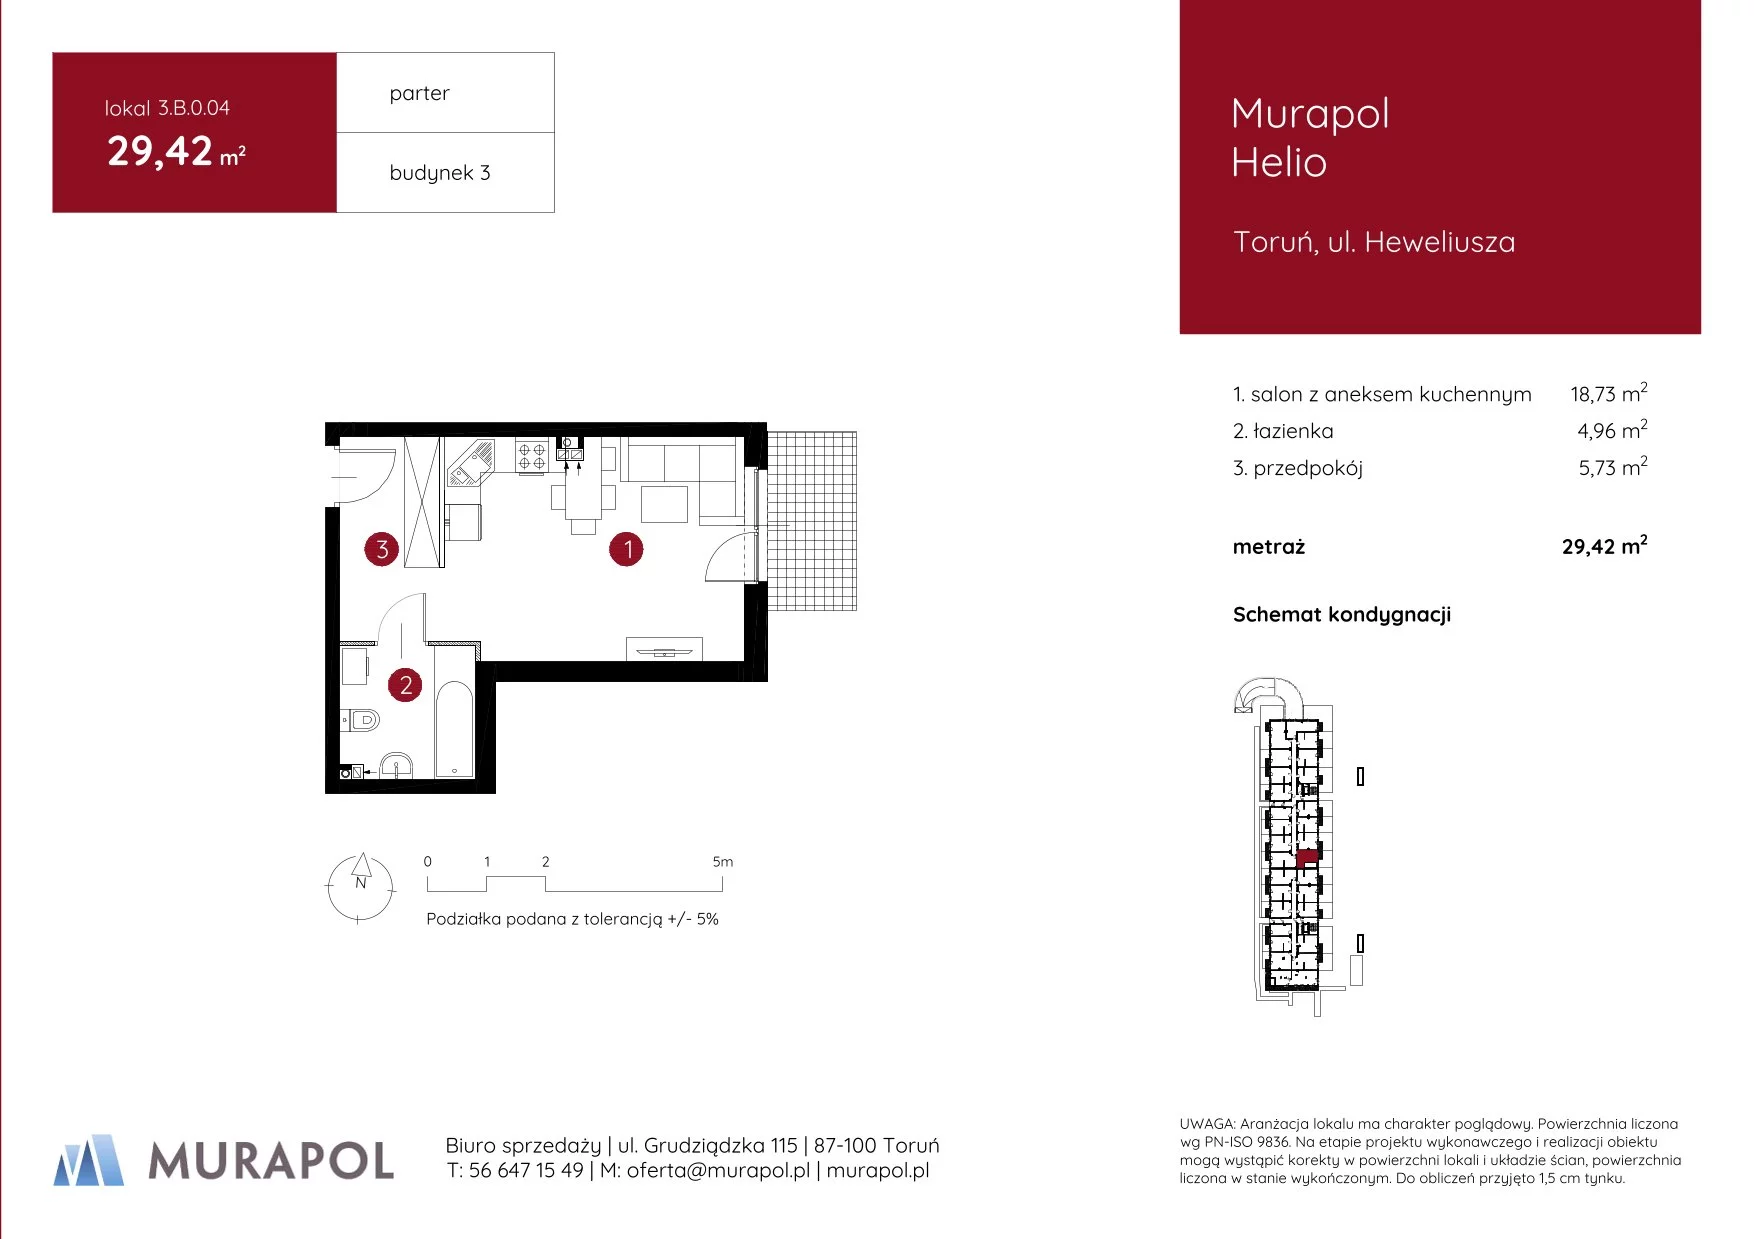 Mieszkanie 29,42 m², parter, oferta nr 3.B.0.04, Murapol Helio, Toruń, Wrzosy, JAR, ul. Heweliusza